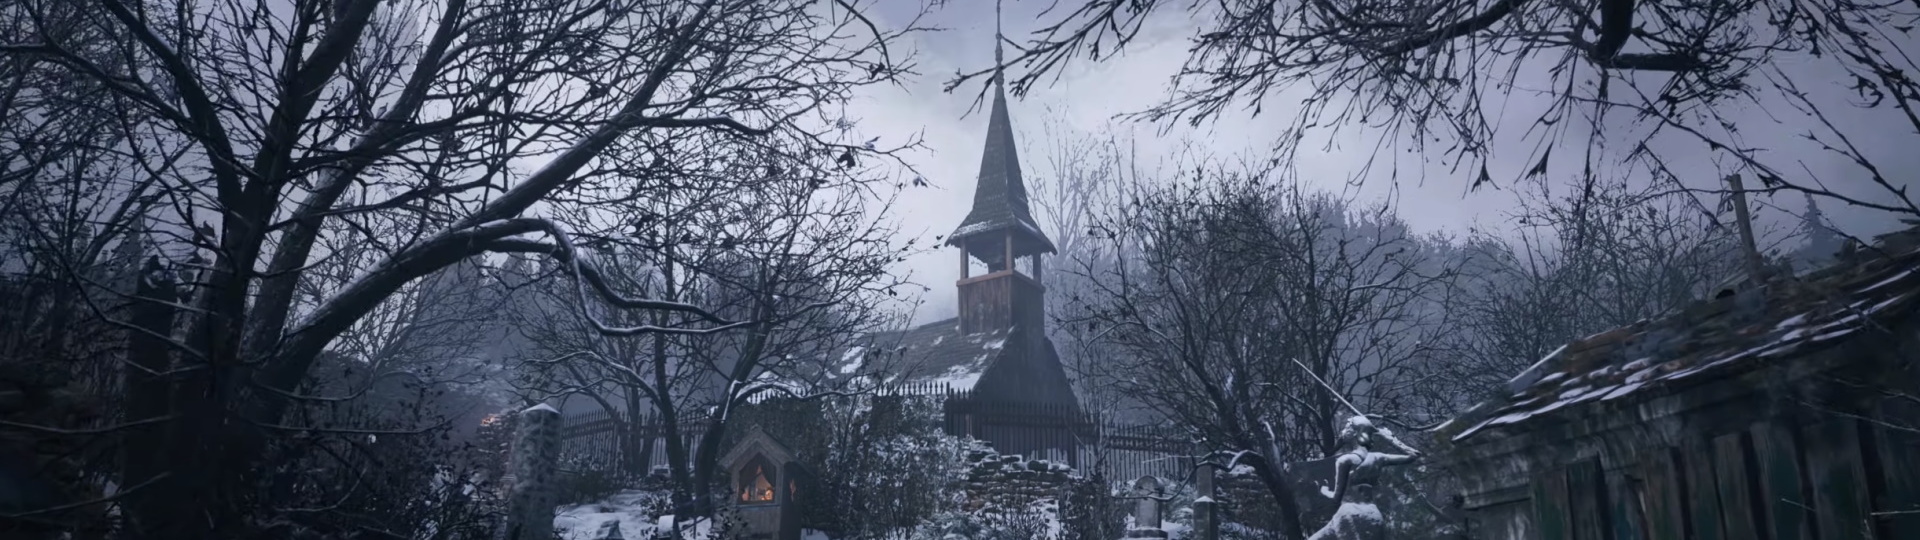 Resident Evil Village bude hodně zaměřen na průzkum otevřeného světa | Novinky